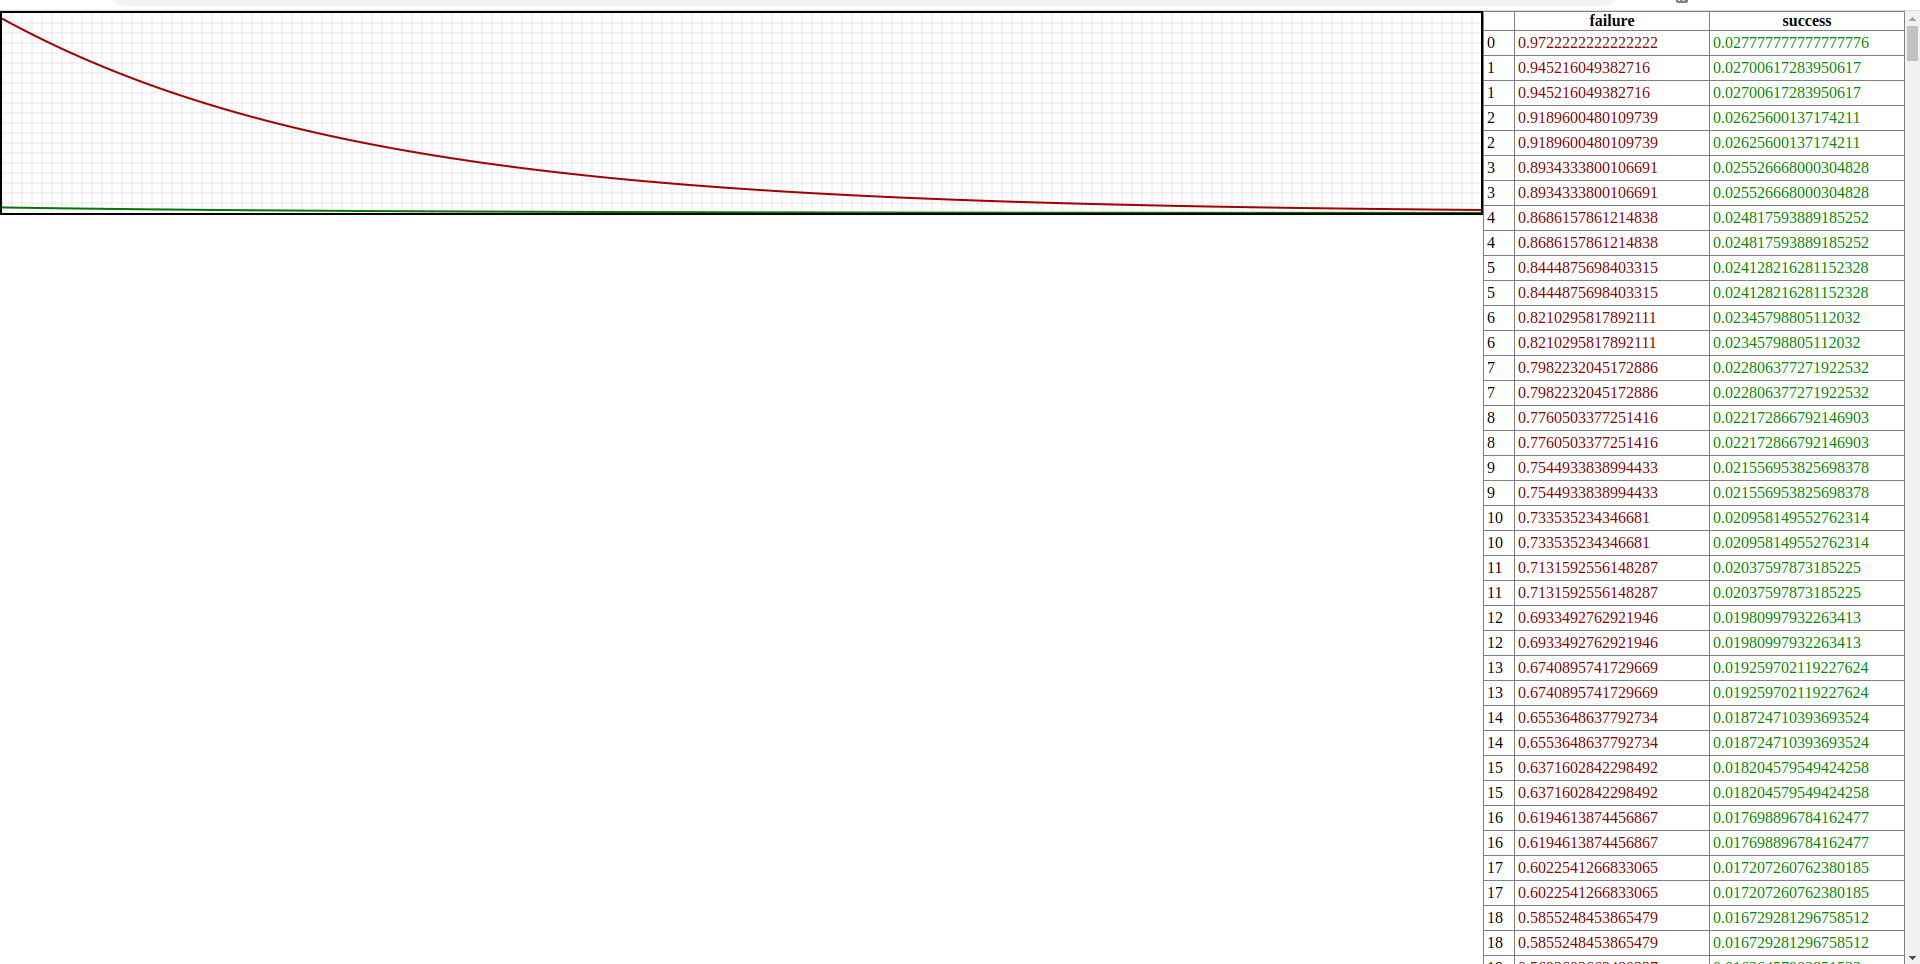 Красный - последовательность окончилась провалом, зелёный - успехом.Цена деления по-вертикали - 5%,по-горизонтали - 1 итерация (оно же - количество элементов в последовательности)